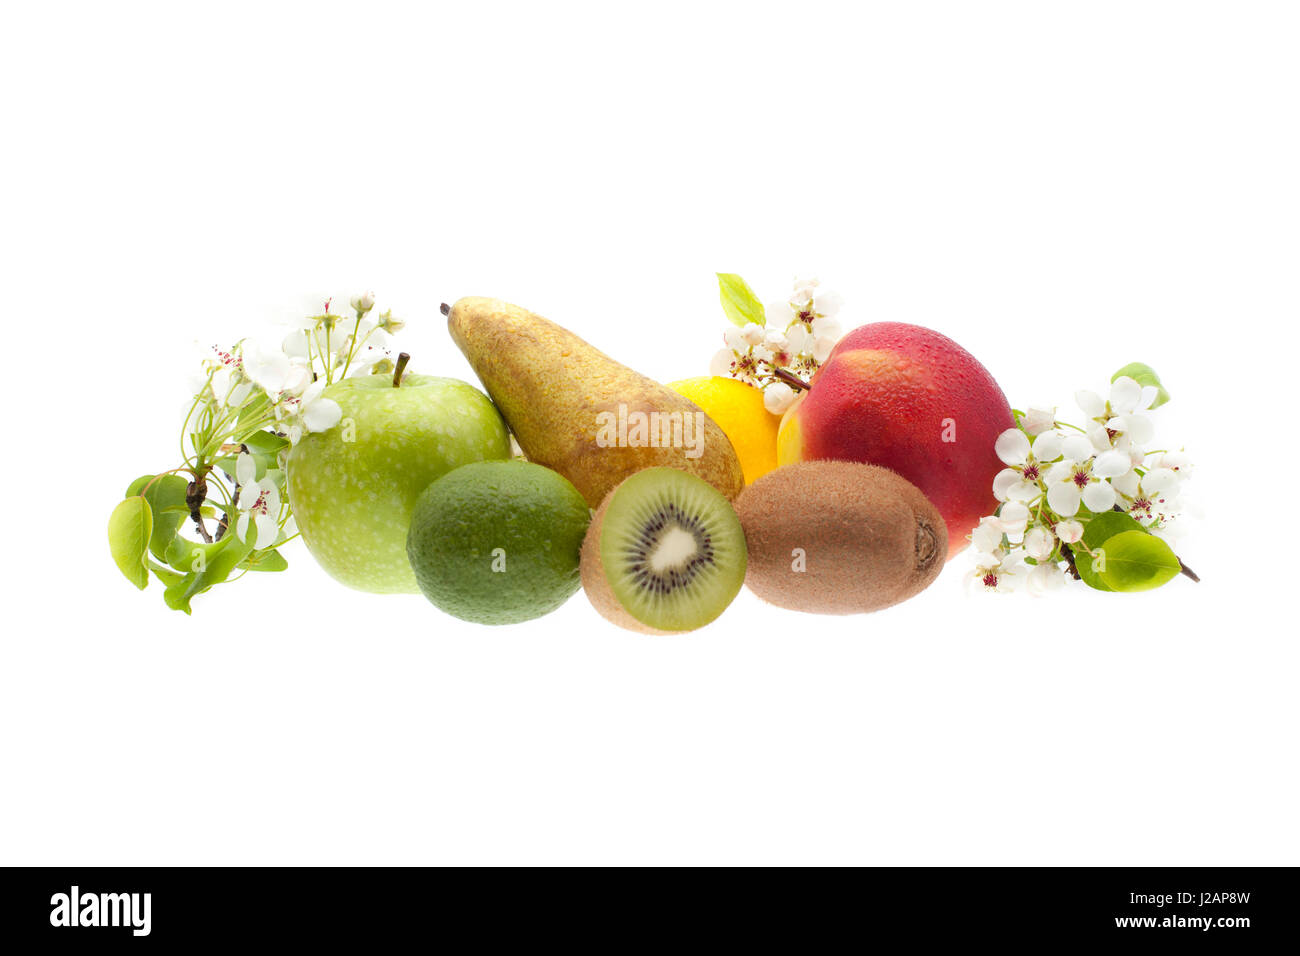 Regime di frutta fresca: mele, pere, kiwi, limone, limonka. Rametto di l'odore di melo... Foto Stock